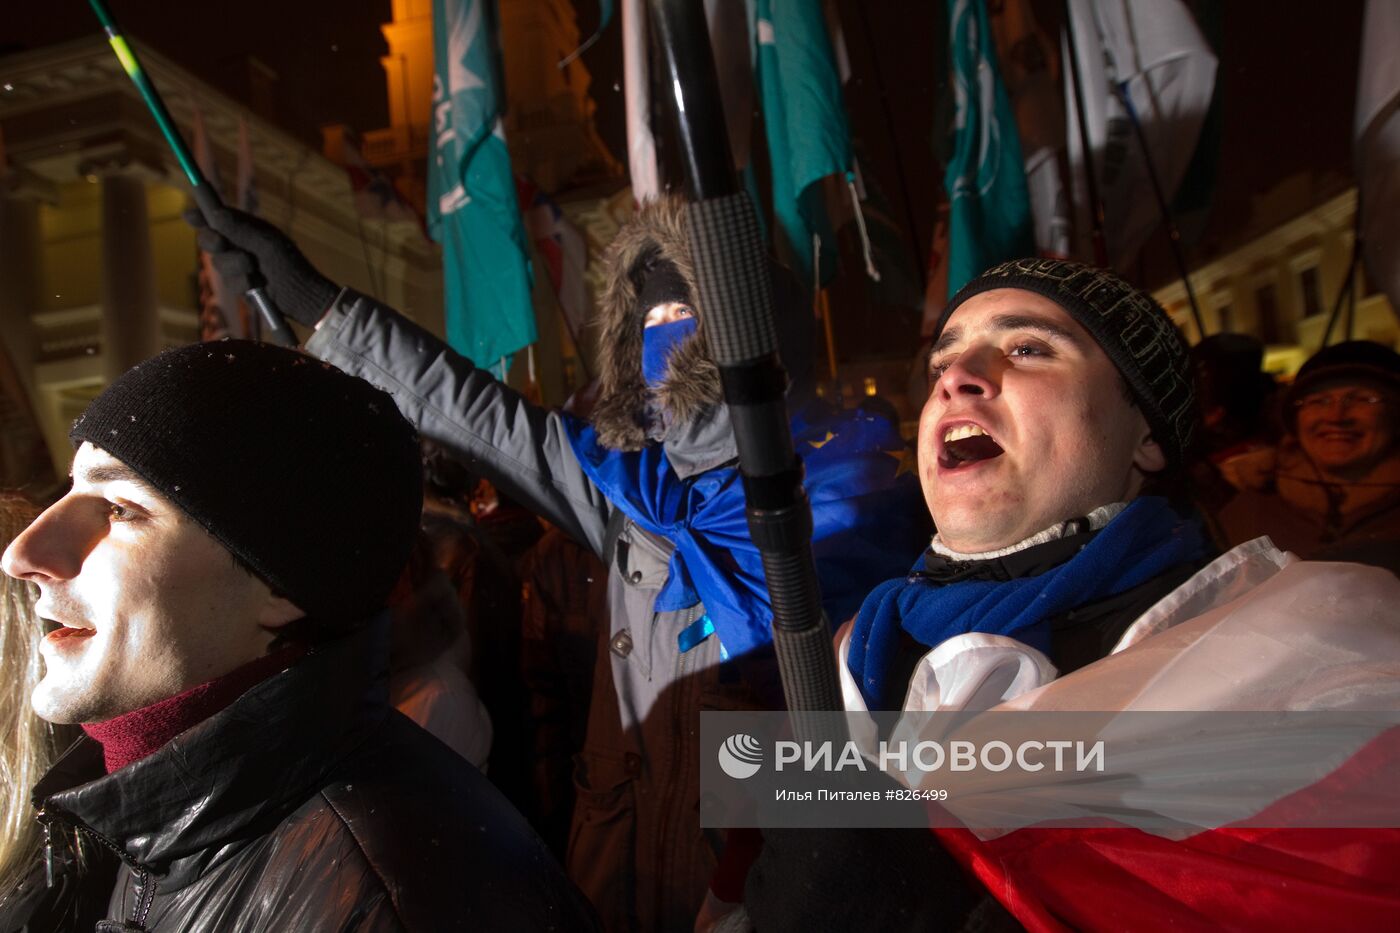 Белорусская оппозиция проводит предвыборную уличную акцию